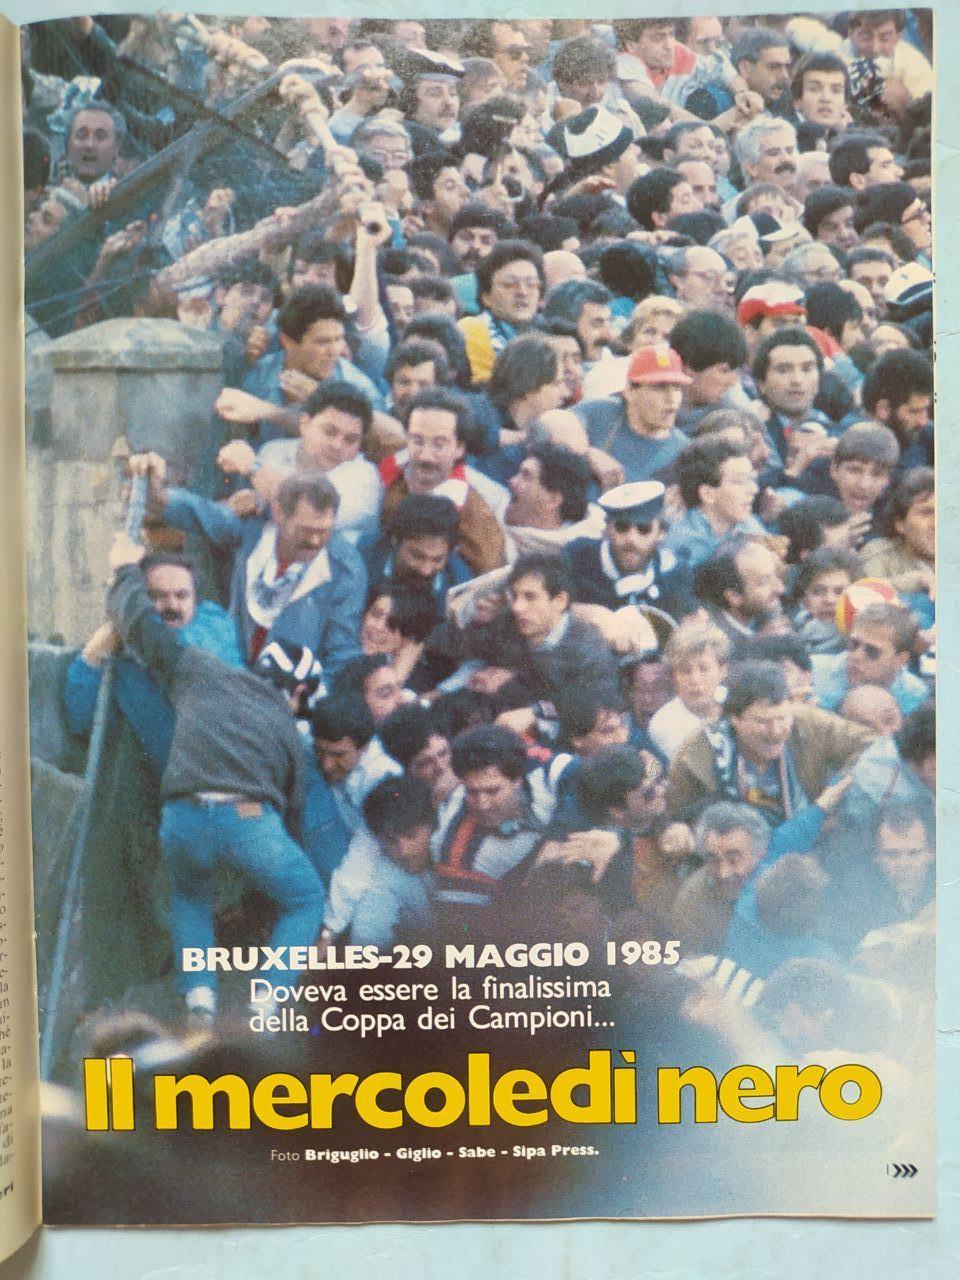 Журнал Гуэрин спортиво Guerin Sportivo 23 - 1985 Эйзельская трагедия 29.05.1985 3